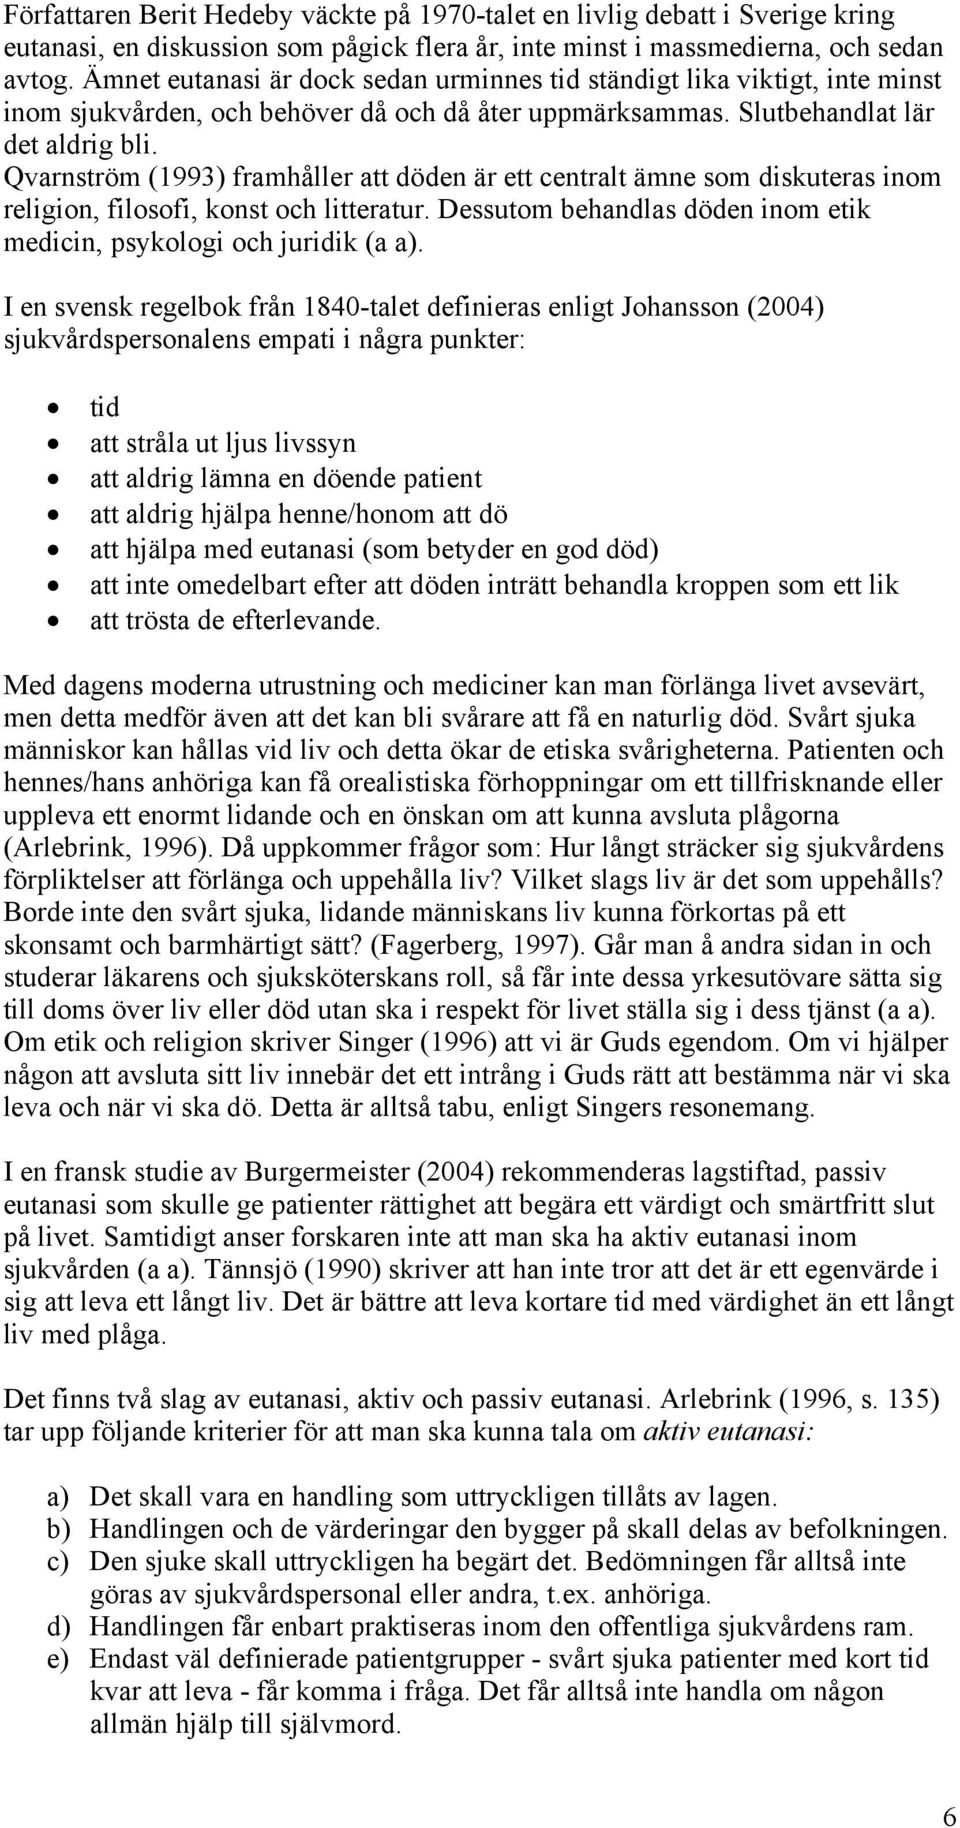 Qvarnström (1993) framhåller att döden är ett centralt ämne som diskuteras inom religion, filosofi, konst och litteratur. Dessutom behandlas döden inom etik medicin, psykologi och juridik (a a).